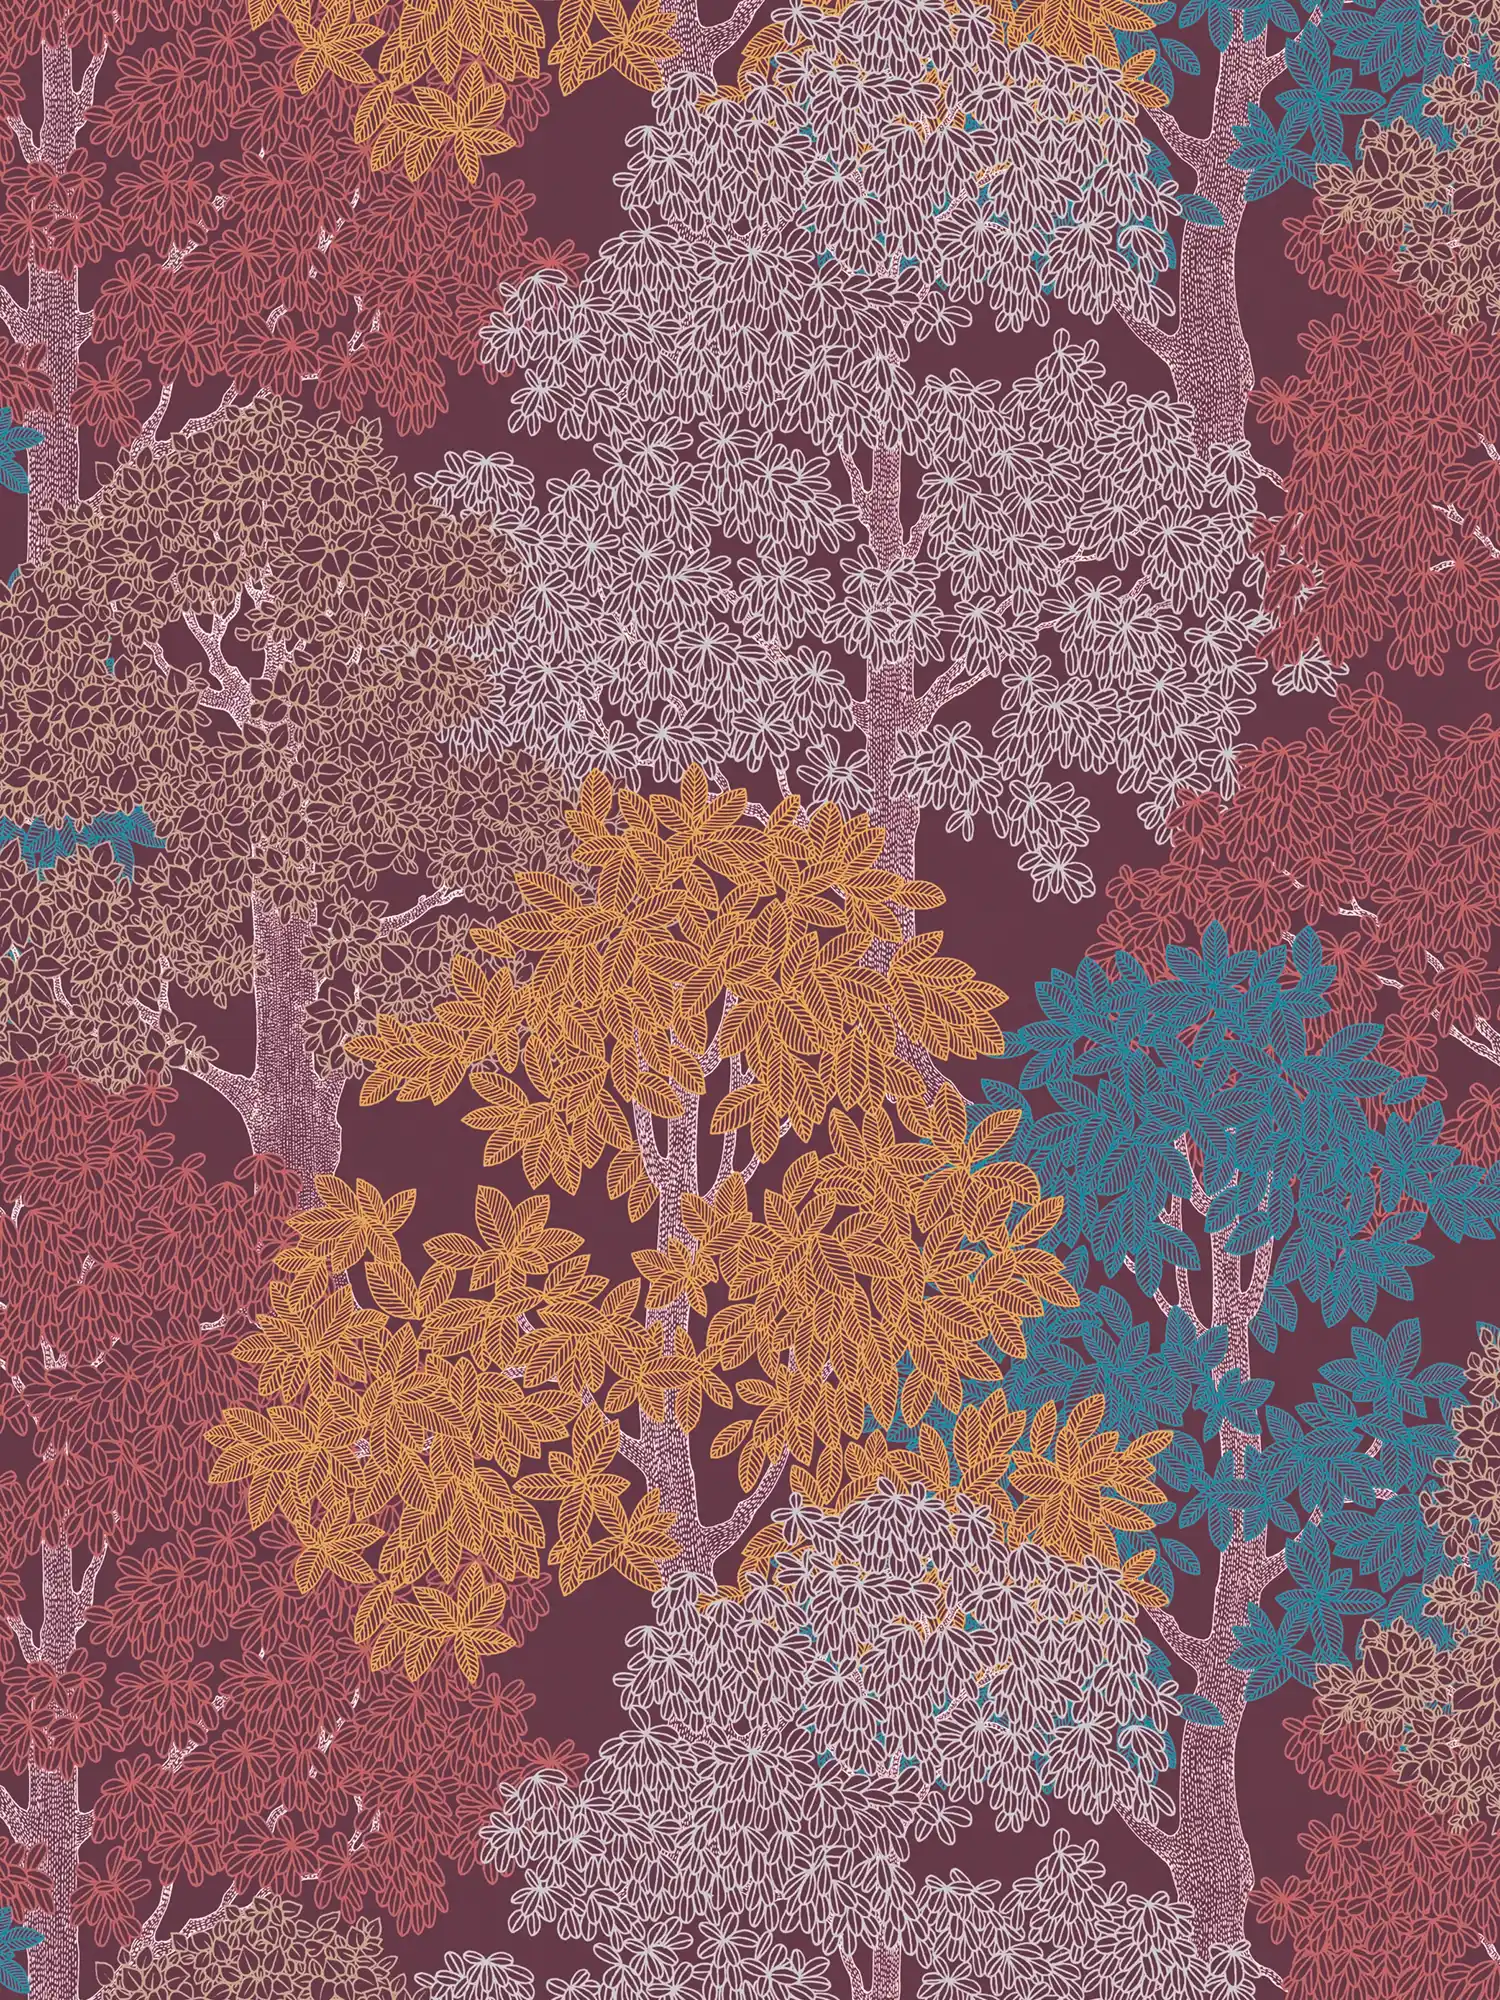             Papel pintado de color rojo vino con motivos de bosque y árboles en estilo de dibujo - púrpura, rojo, amarillo
        